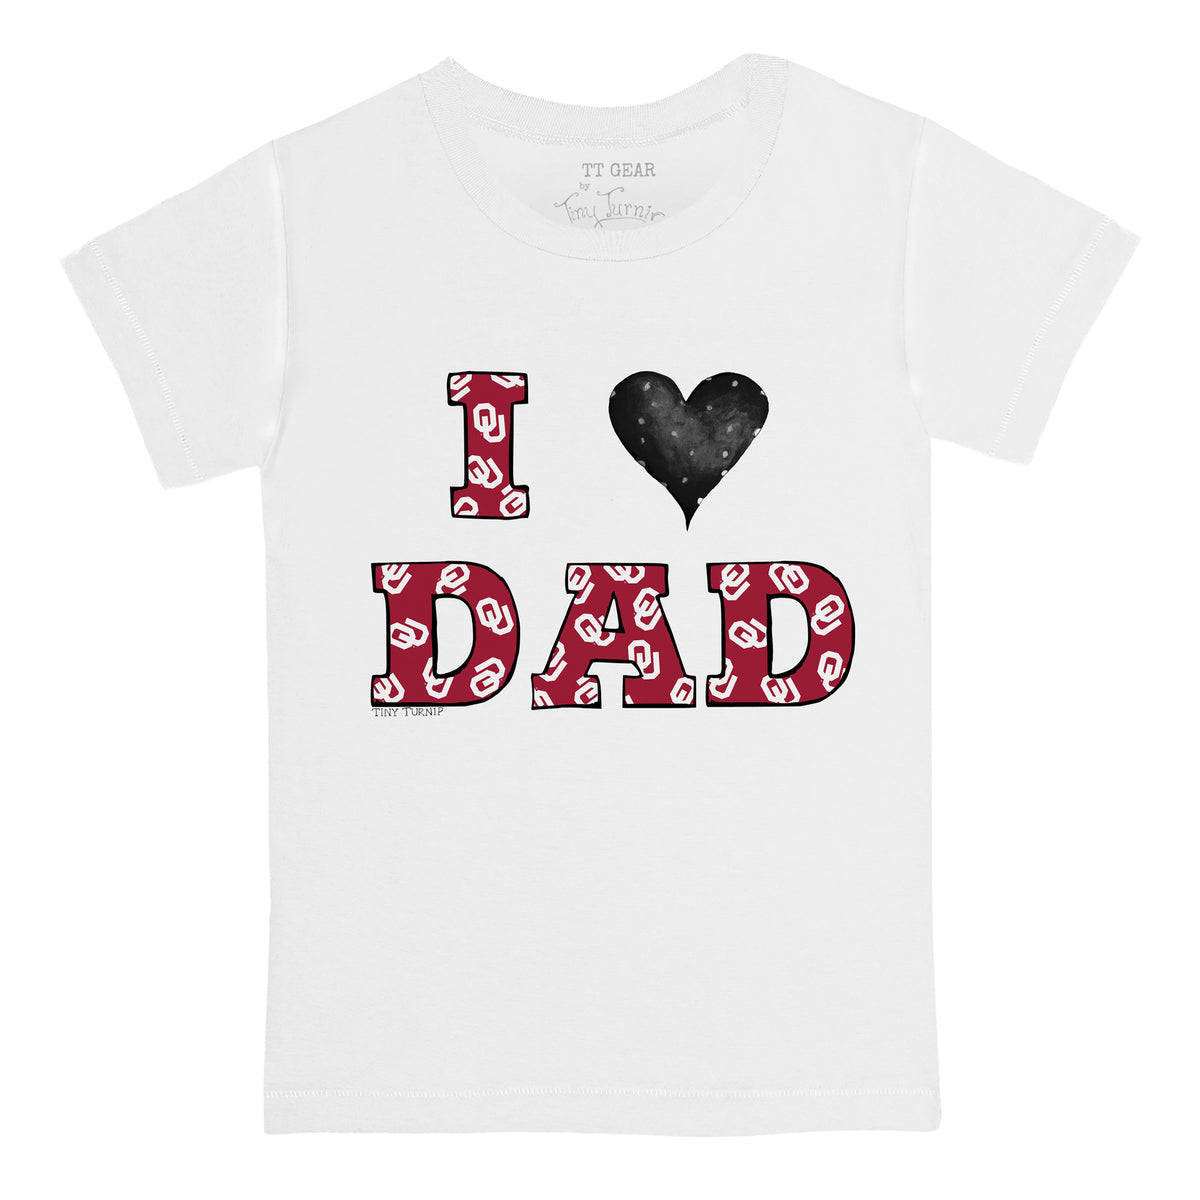 Oklahoma Sooners I Love Dad Tee Shirt